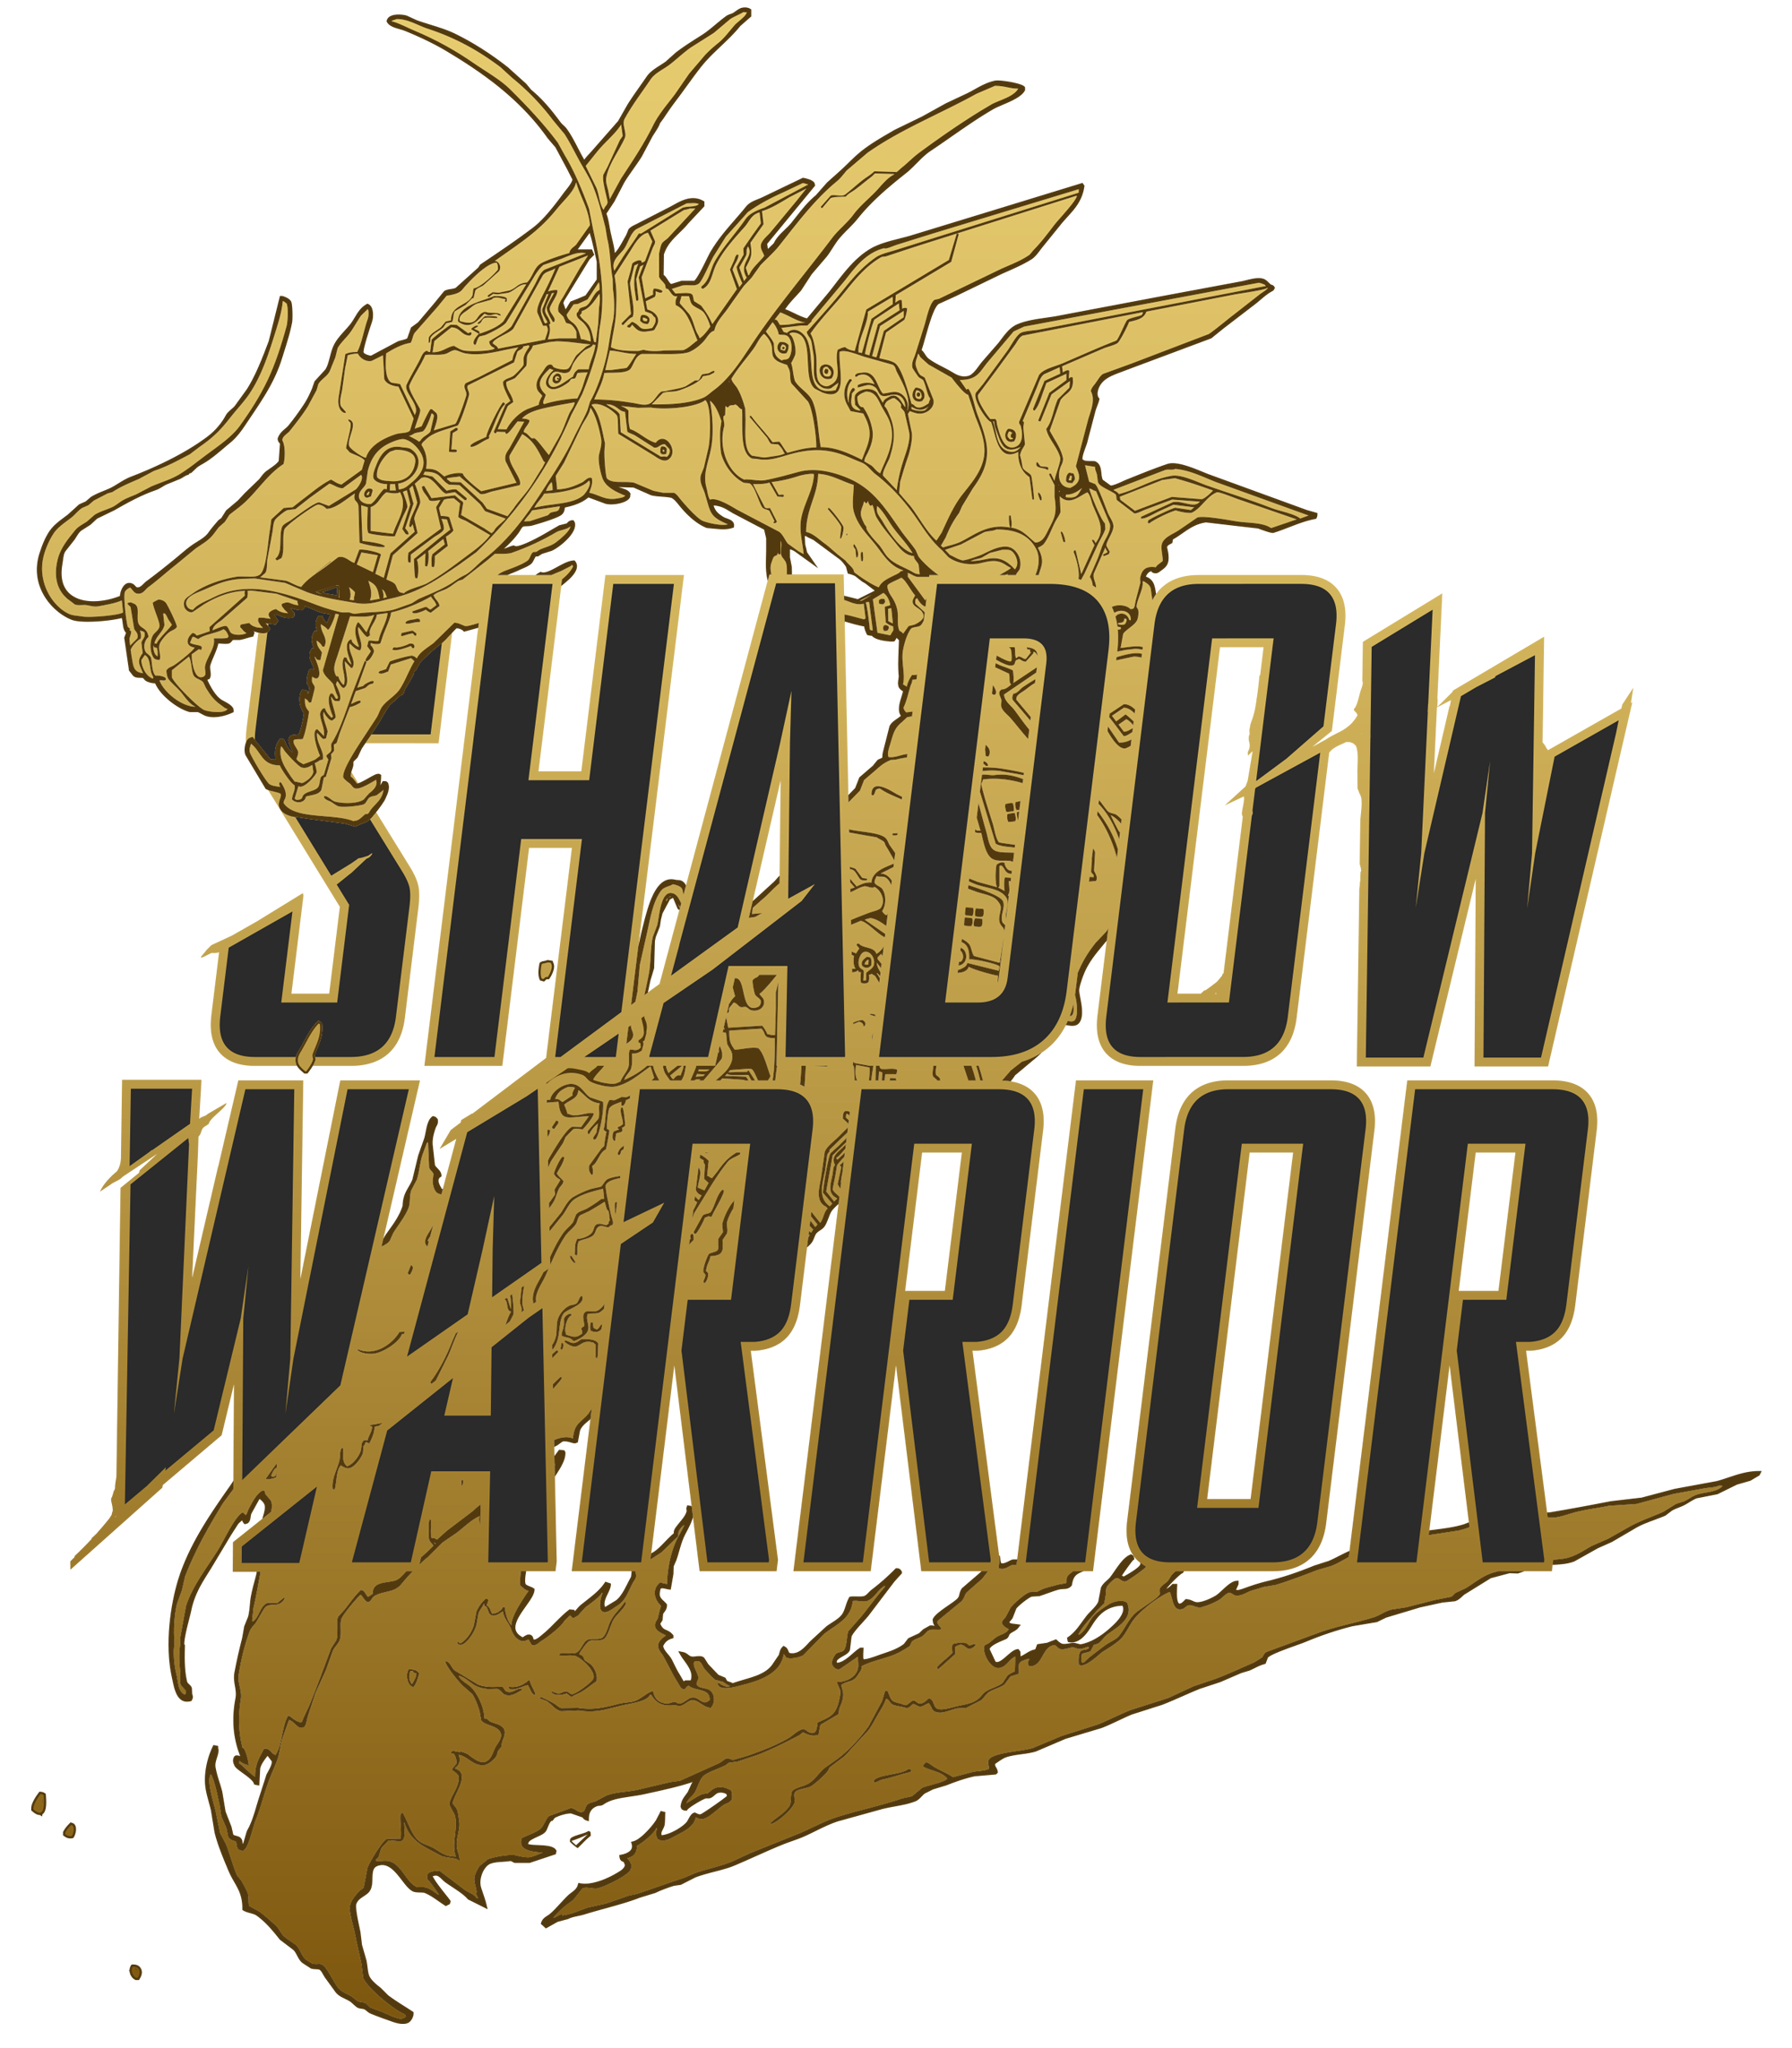 Bote de Shadow Warrior 2